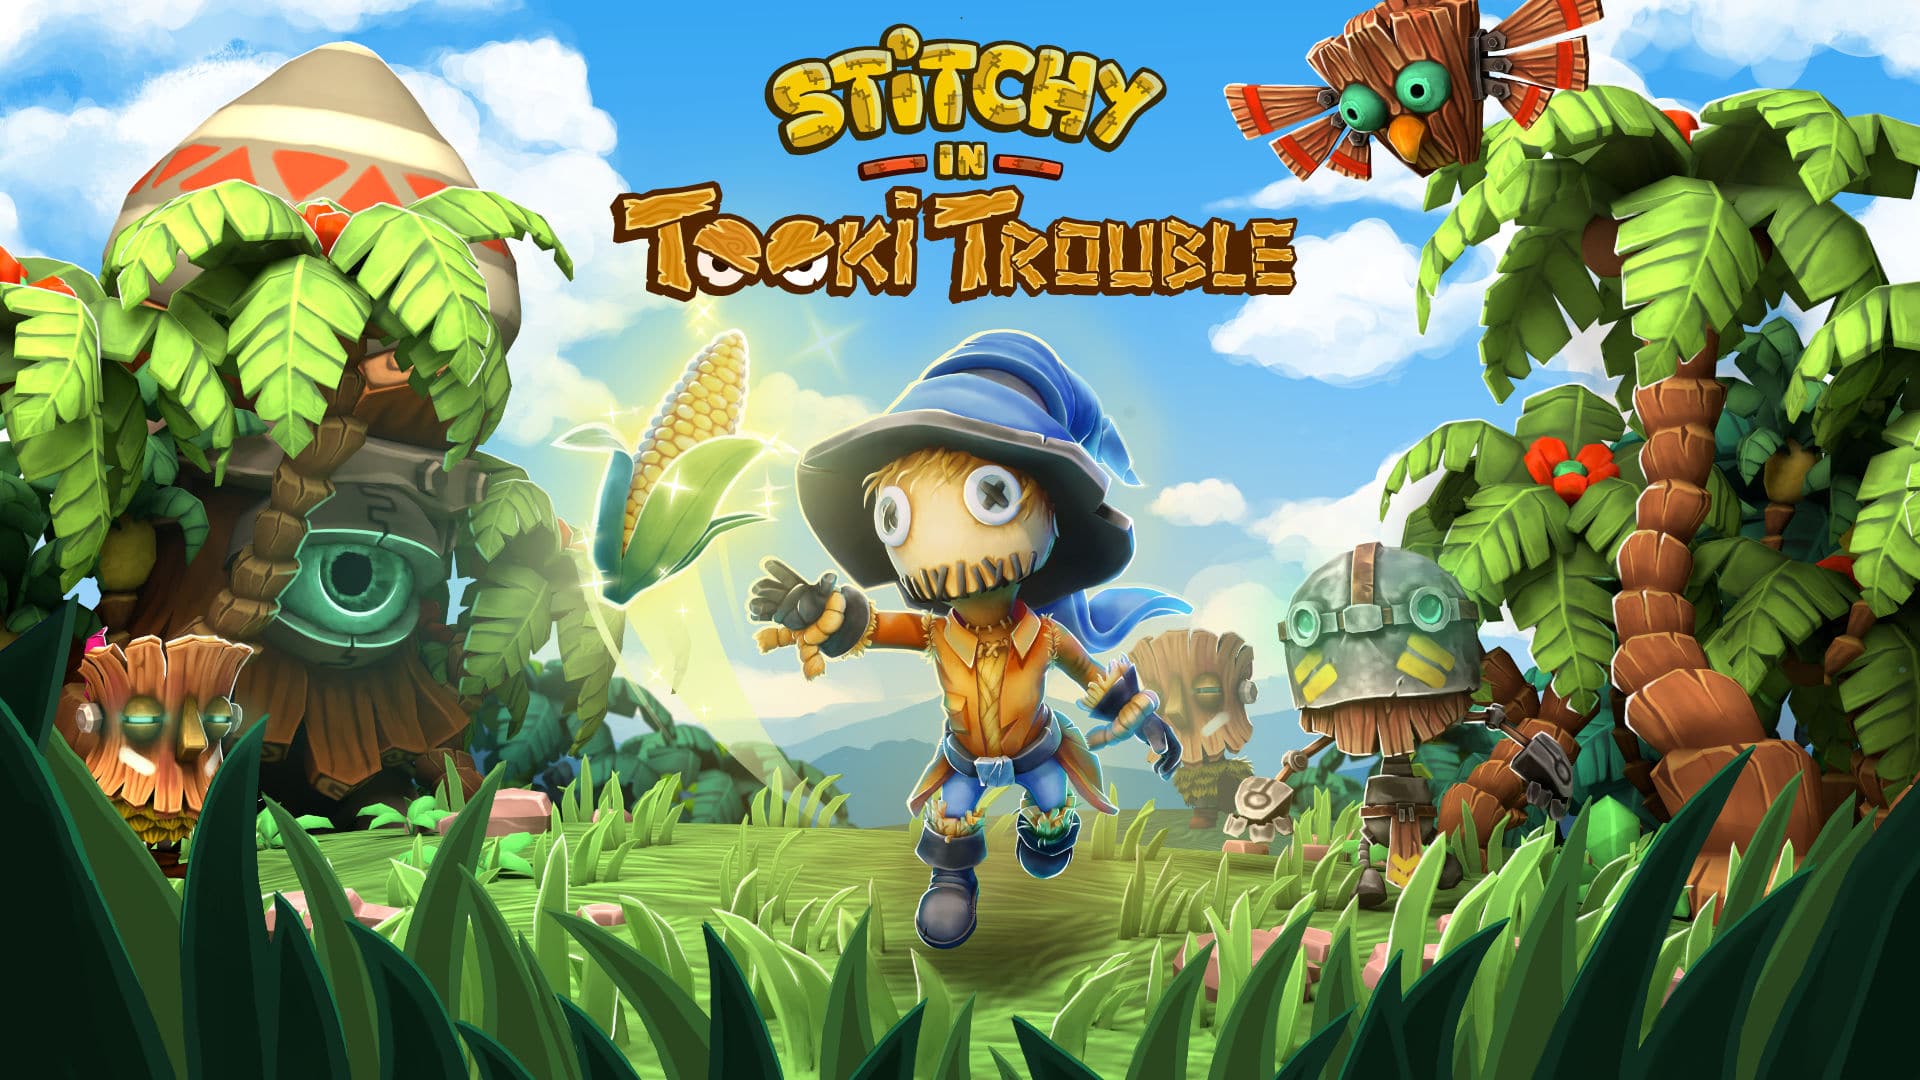 Stitchy in Tooki Trouble llegará el 11 de marzo a Nintendo Switch